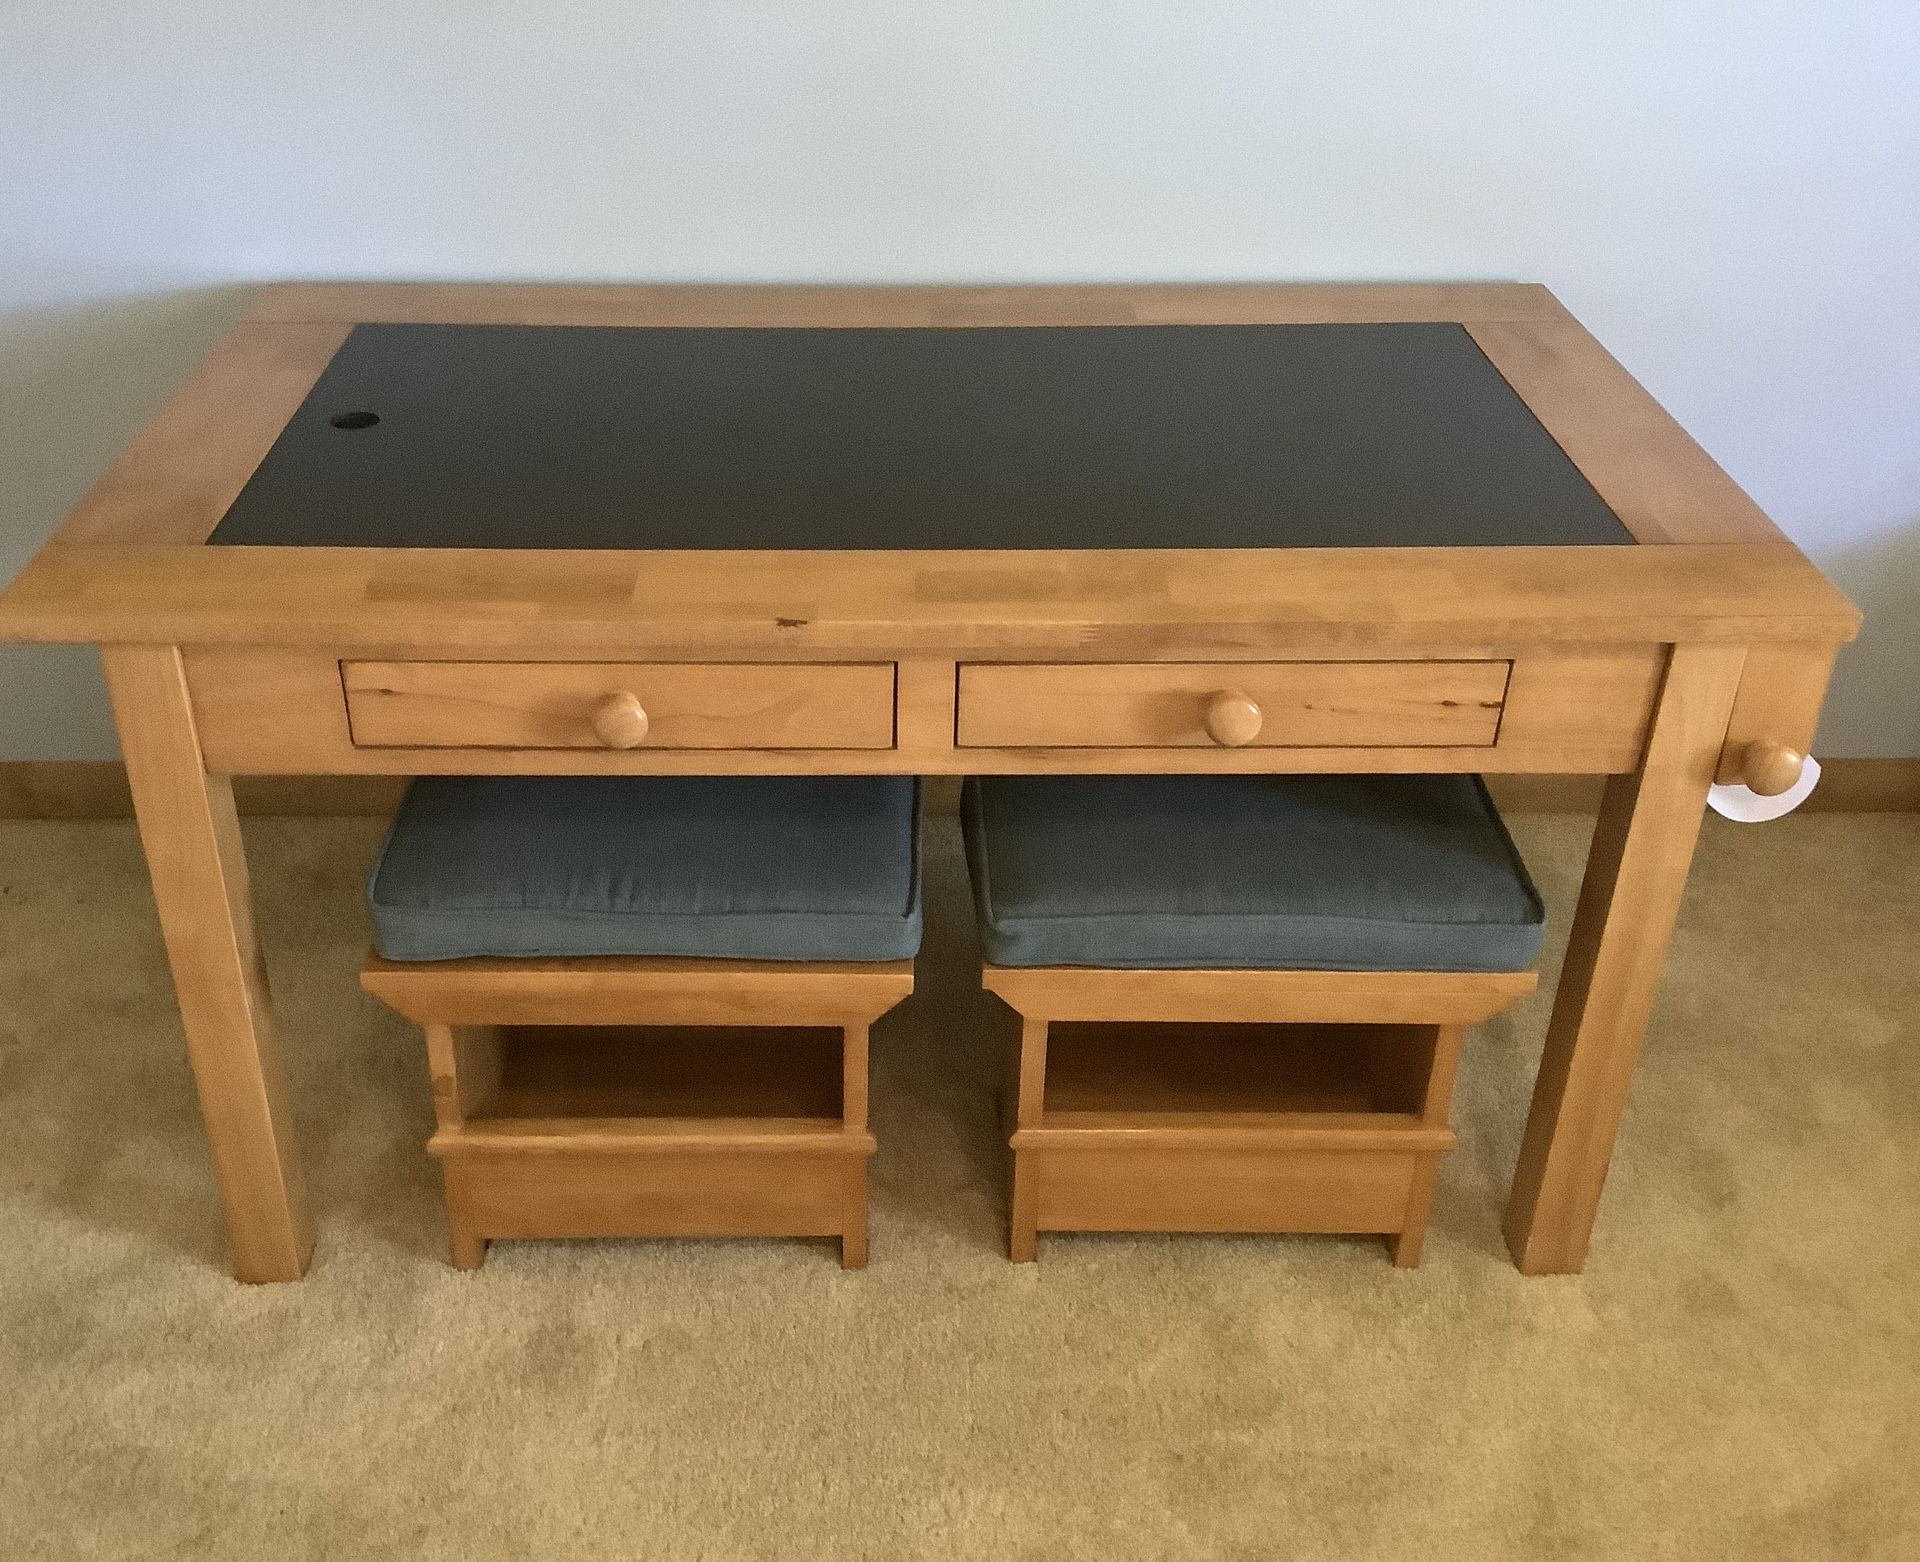 Child’s Desk For Arts, Crafts, Homework 